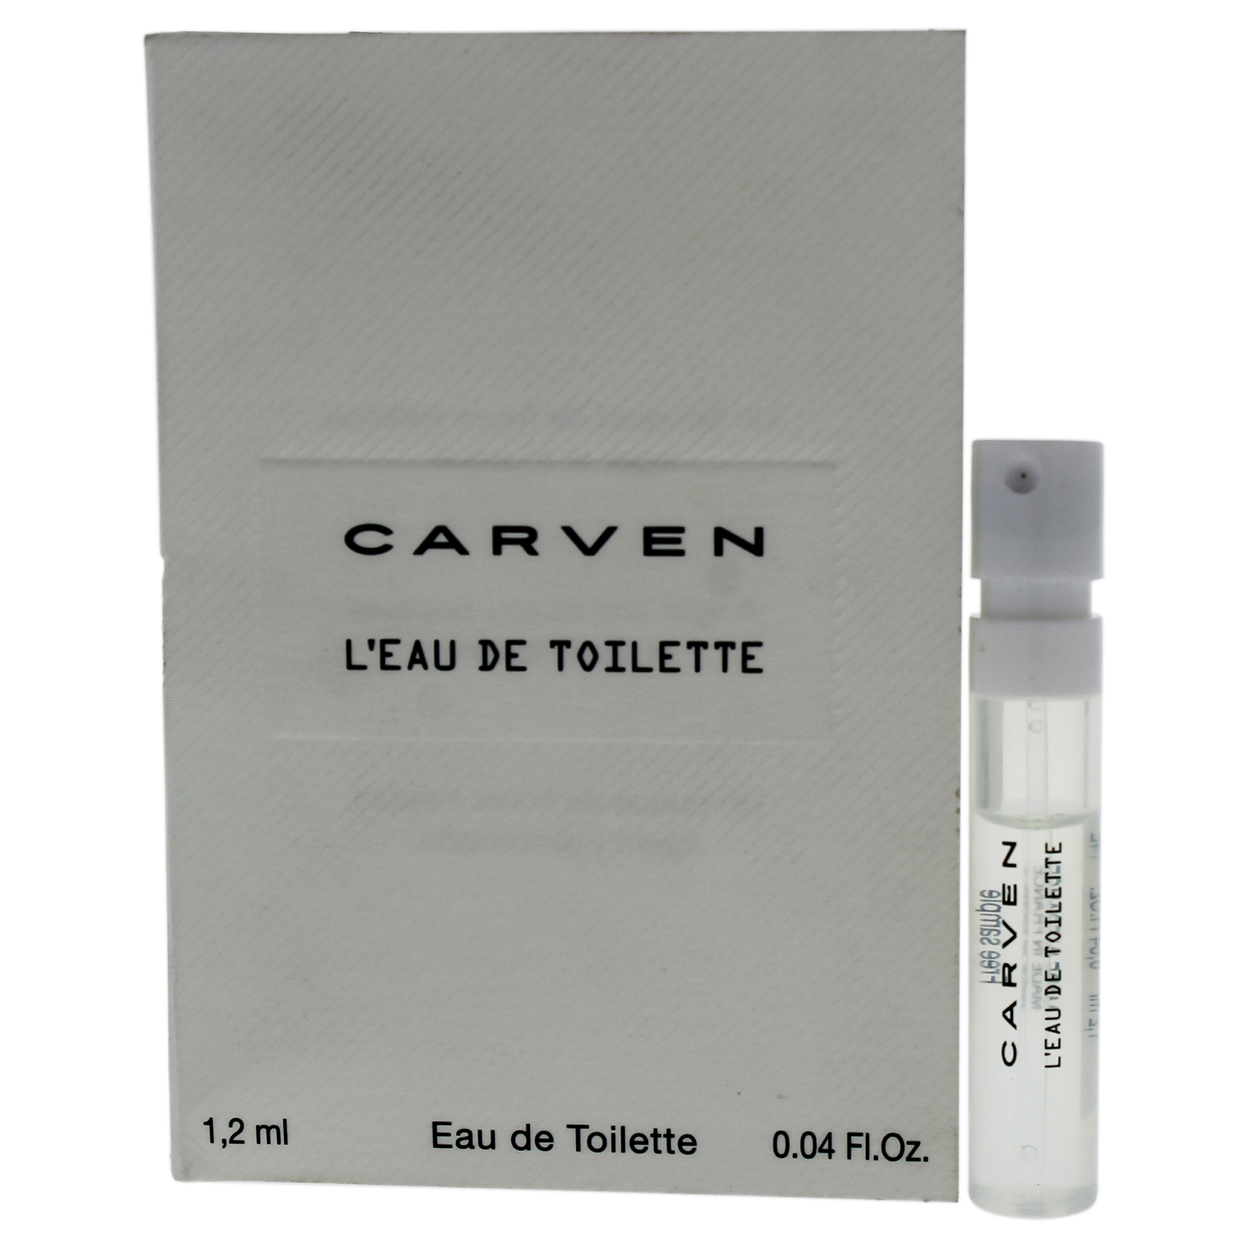 Carven LEau De Toilette EDT Spray Vial 1.2 Ml